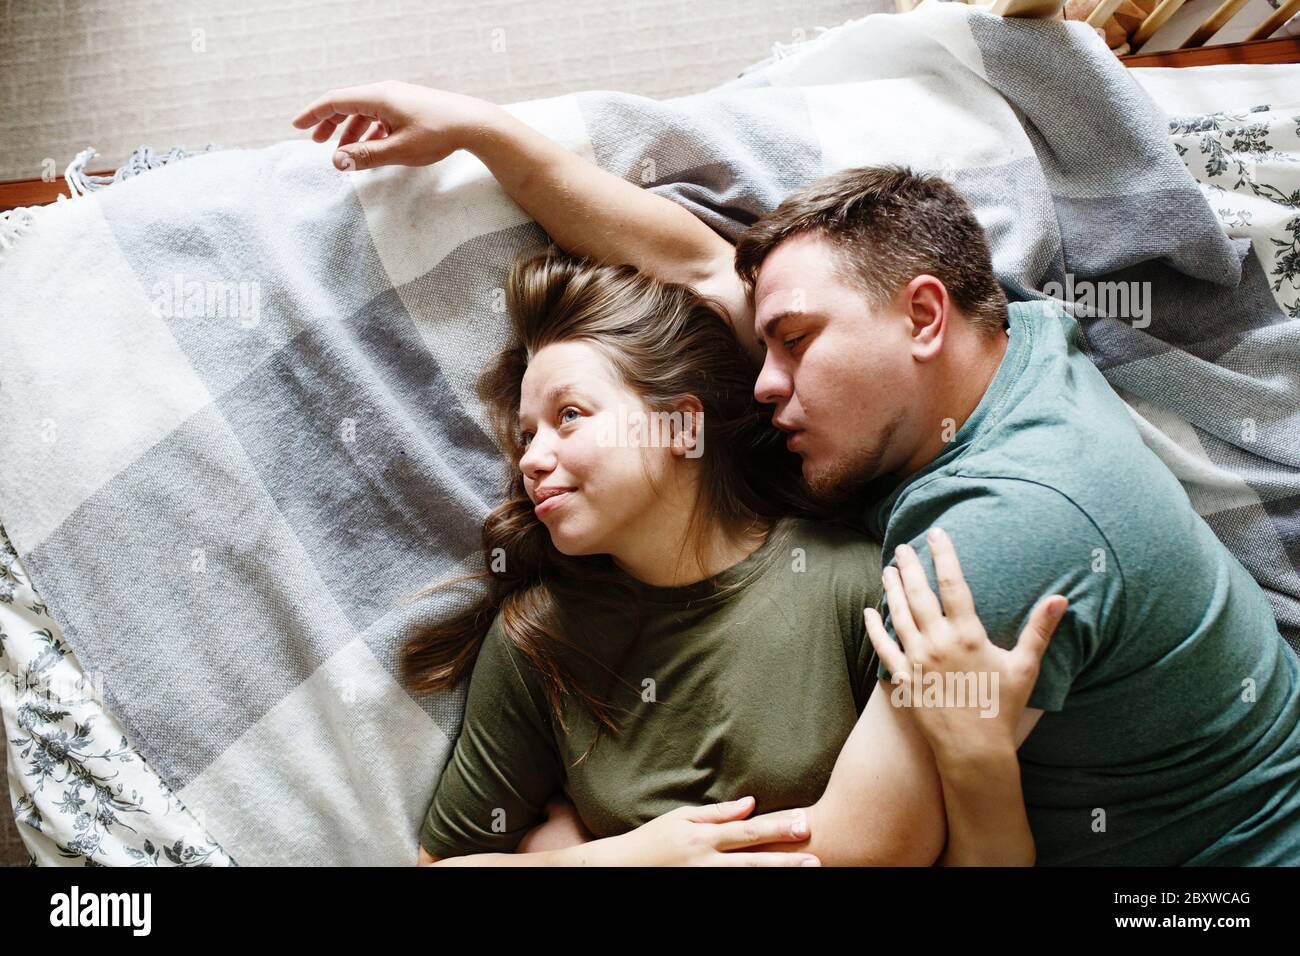 Mann Und Frau Beim Küssen Im Bett Fotos Und Bildmaterial In Hoher Auflösung Seite 2 Alamy